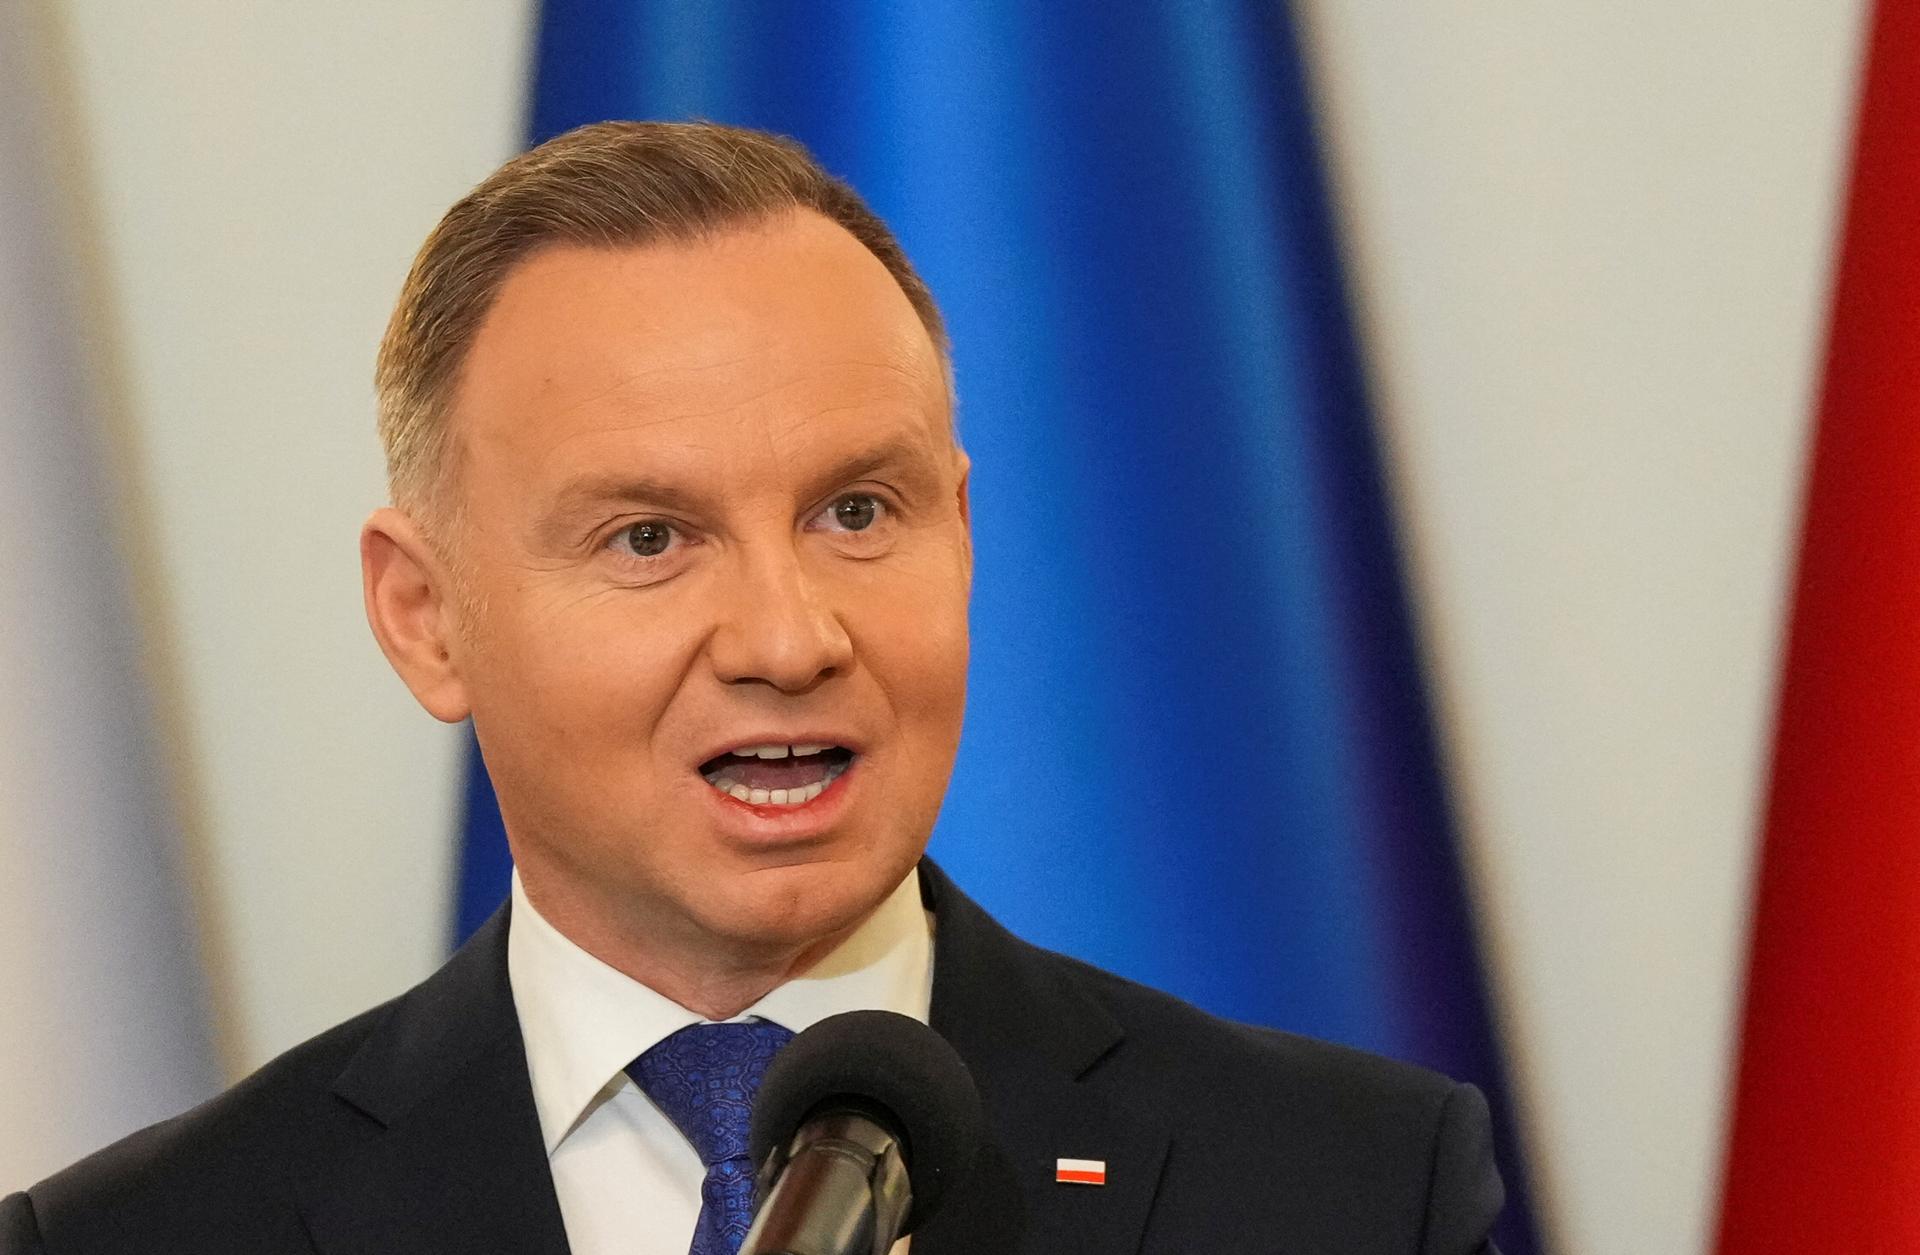 Poľský prezident zaskočil vulgárnym príspevkom na Twitteri, išlo zrejme o omyl